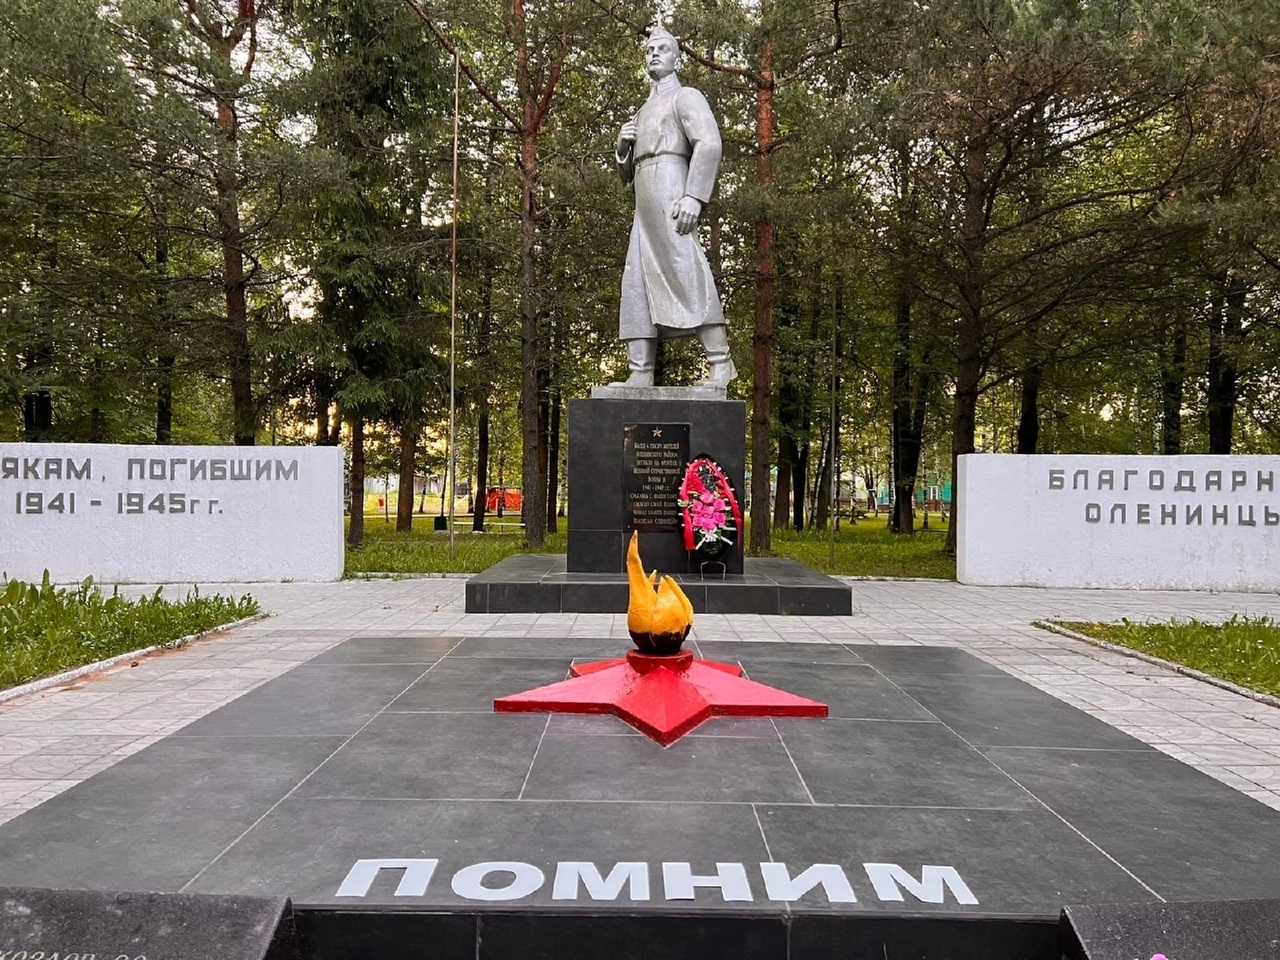 Акция "Свеча памяти" прошла в муниципалитетах по всей Тверской области